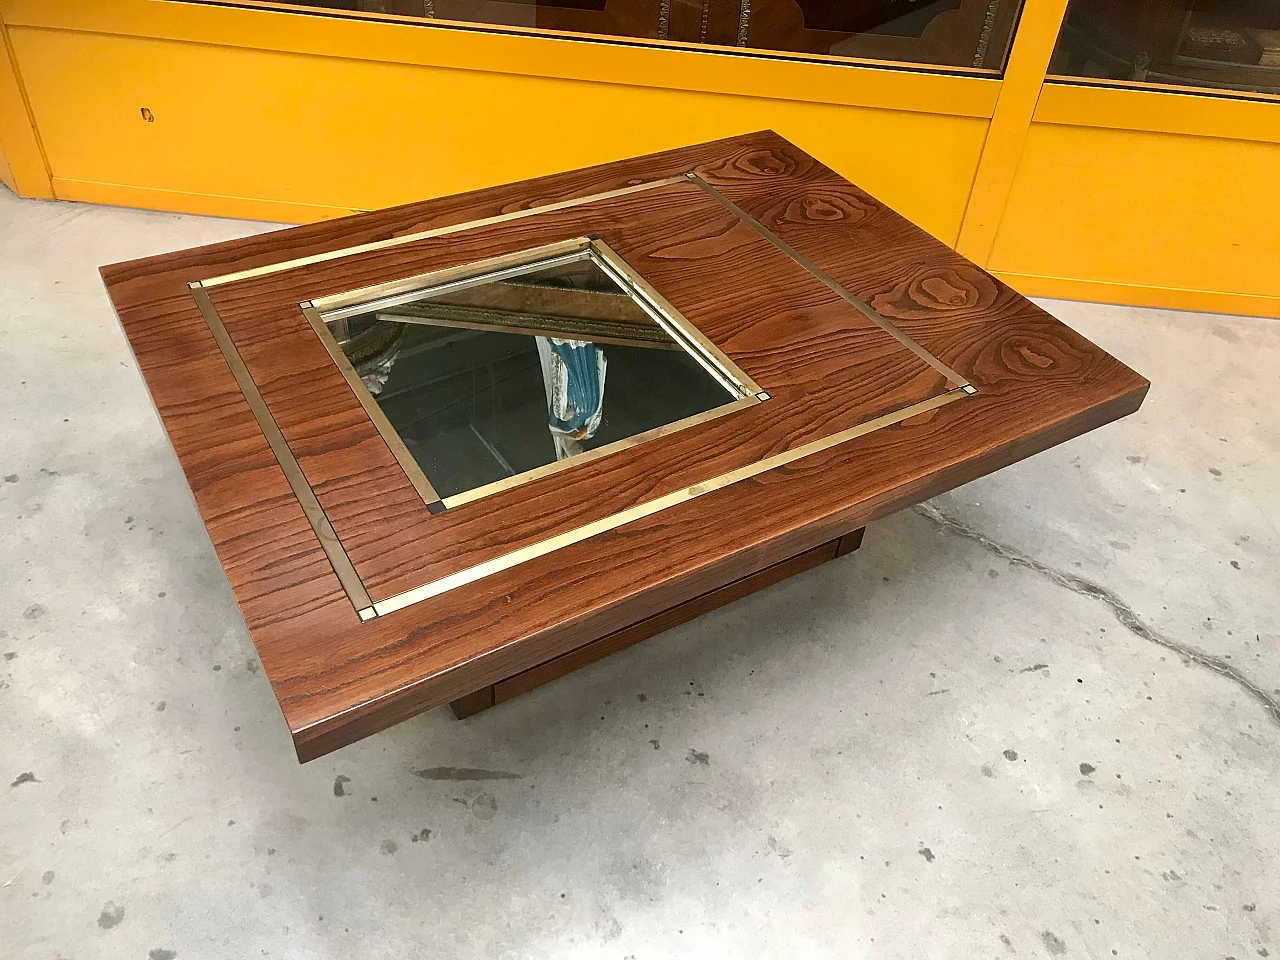 Tavolino da Caffè tipo Willy Rizzo in legno di rovere con specchio e profili di ottone, originale anni '60/'70 1226019